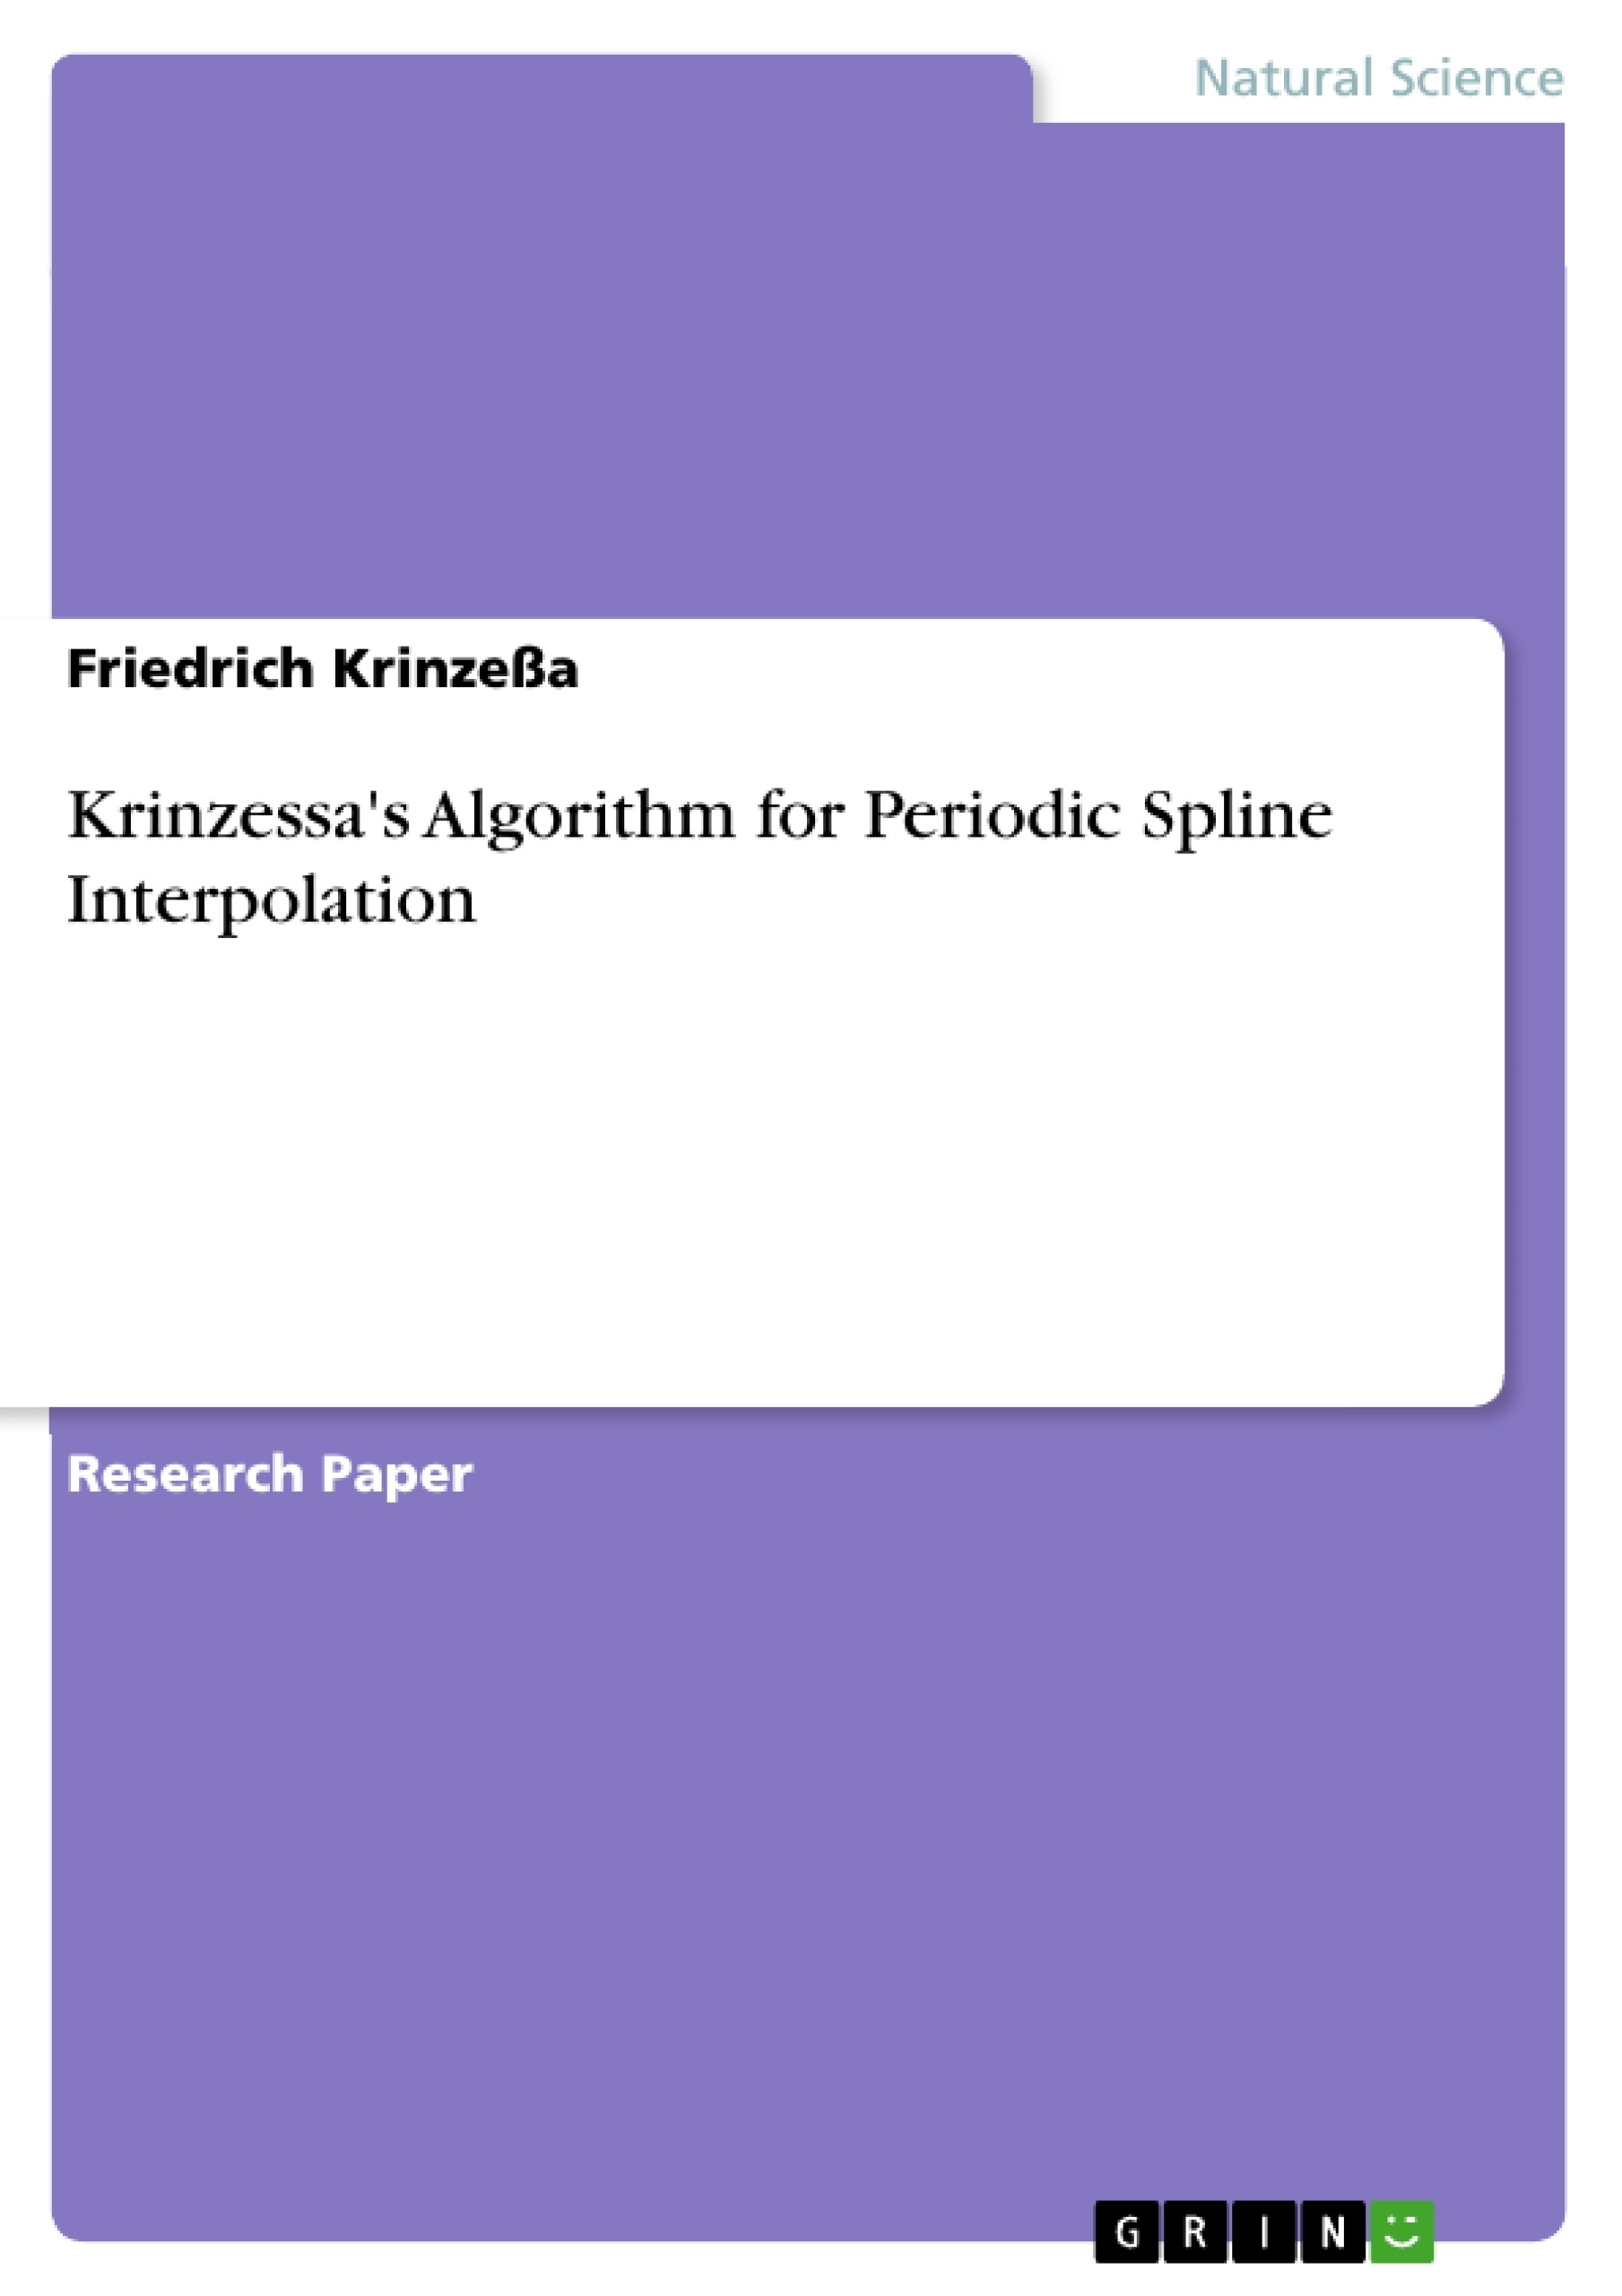 Title: Krinzessa's Algorithm for Periodic Spline Interpolation